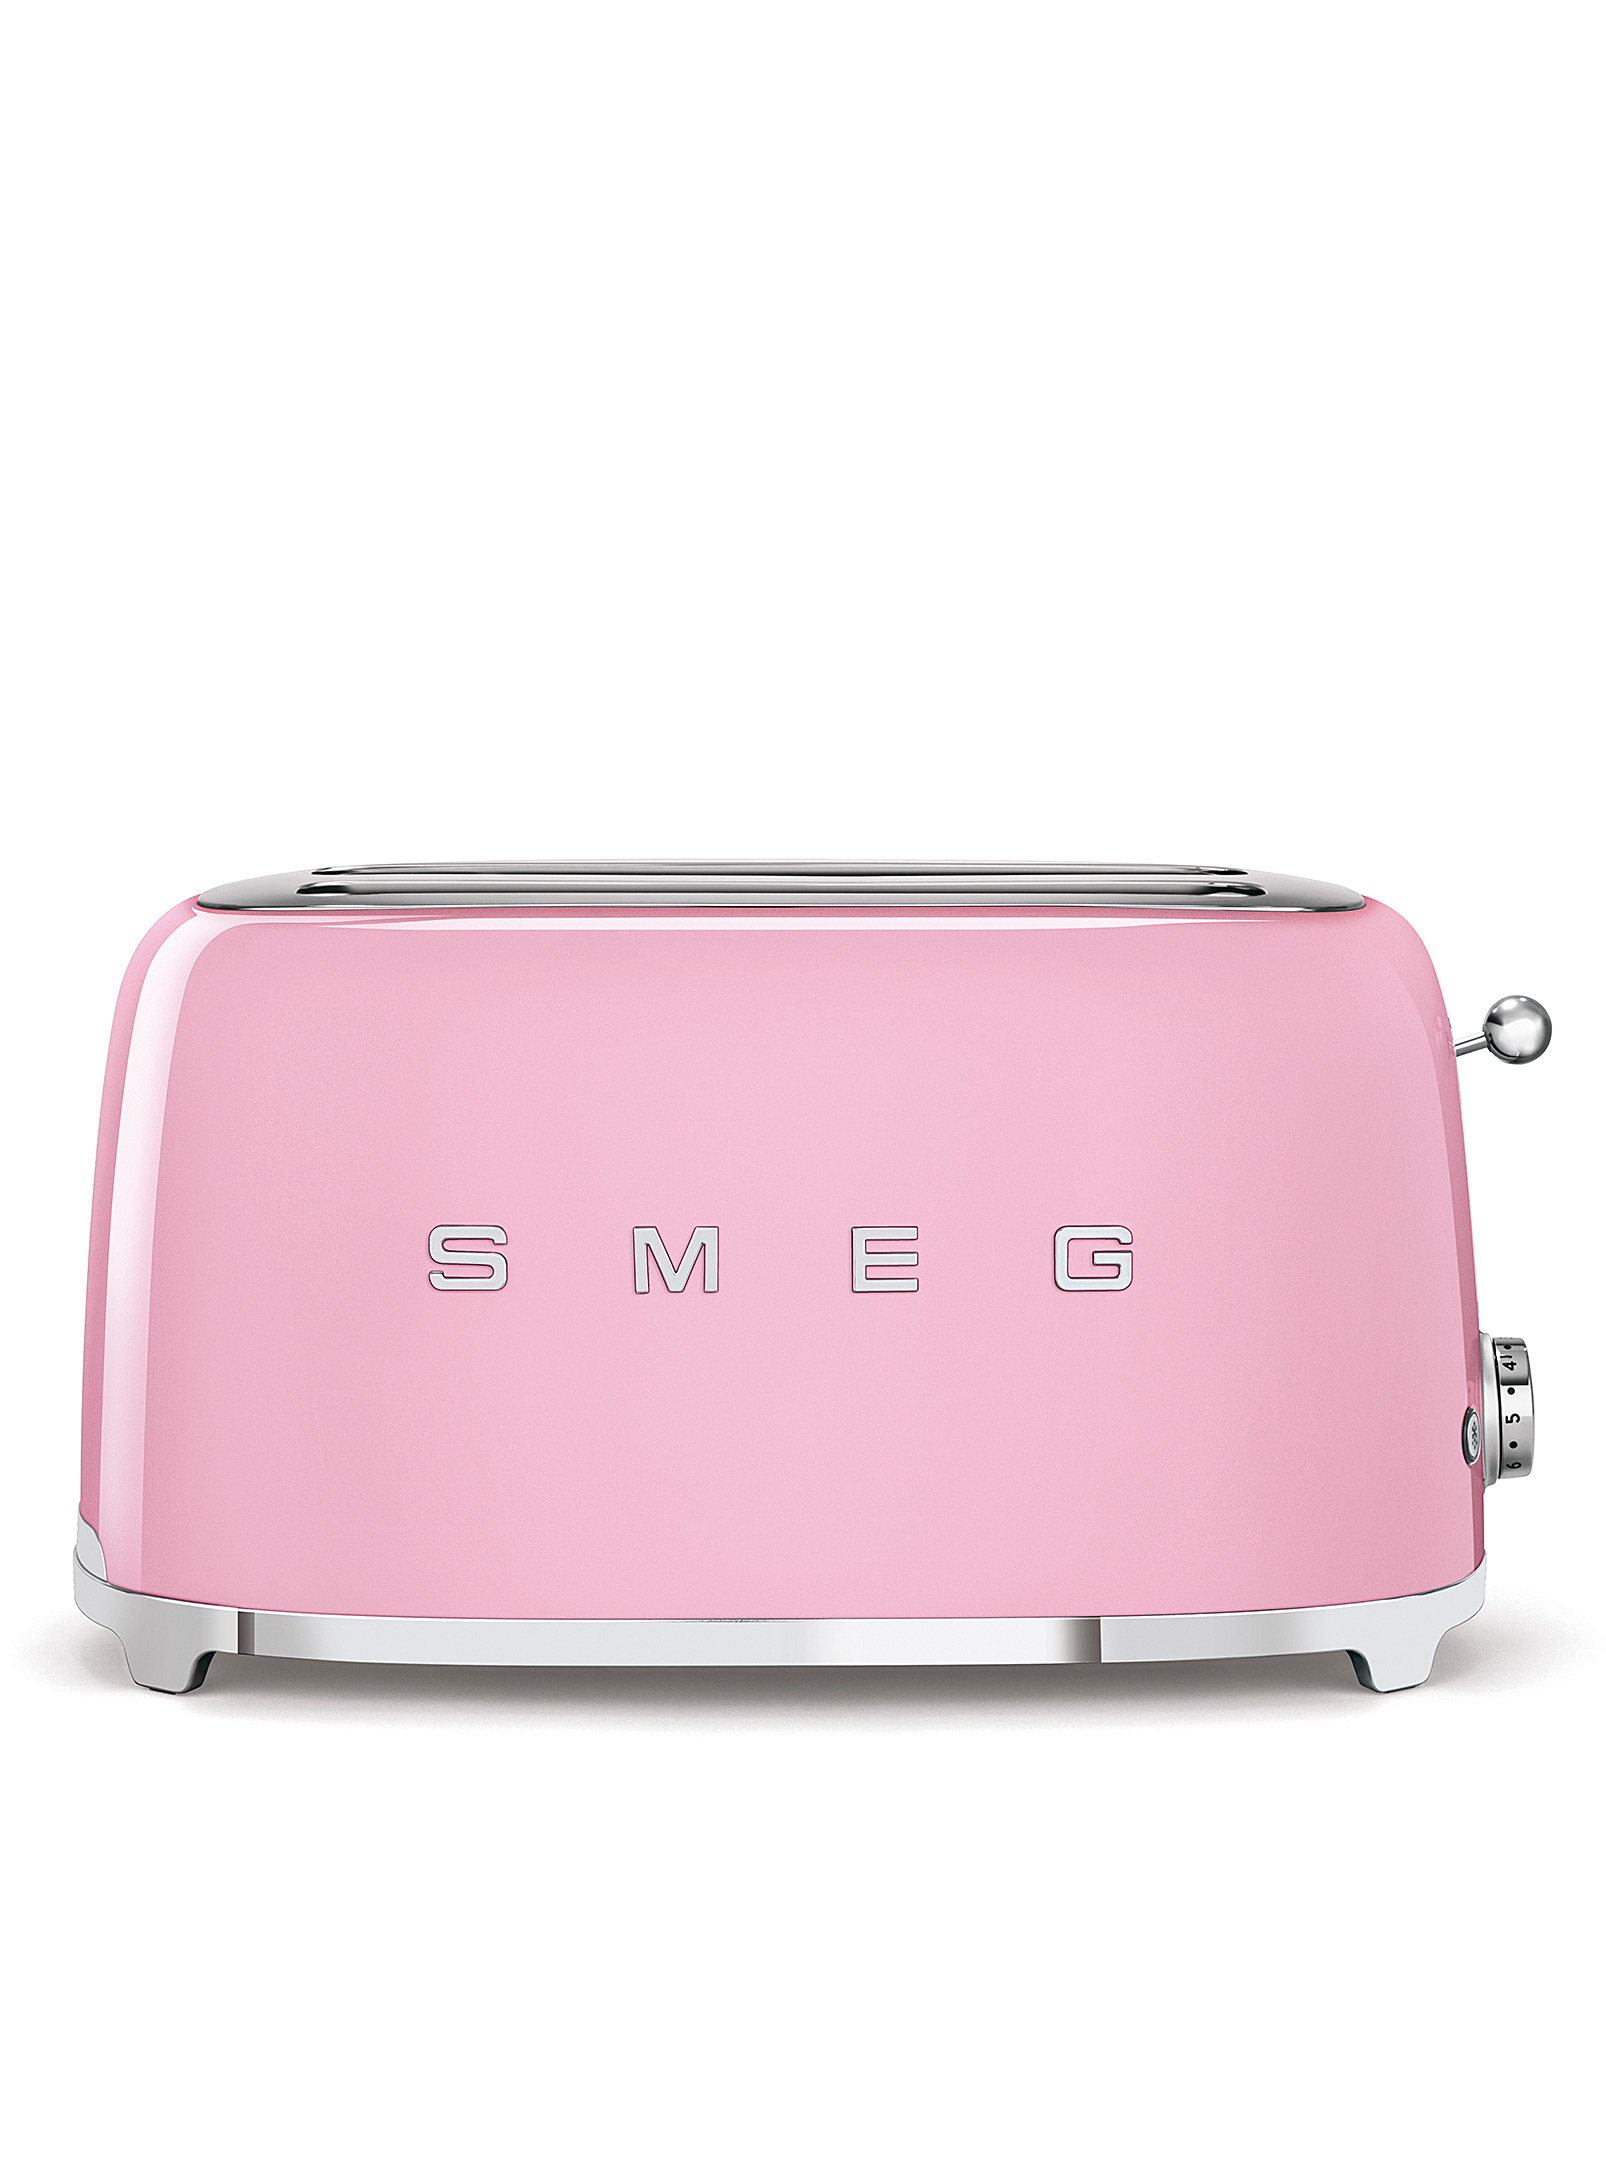 Smeg - Elongated slots retro toaster